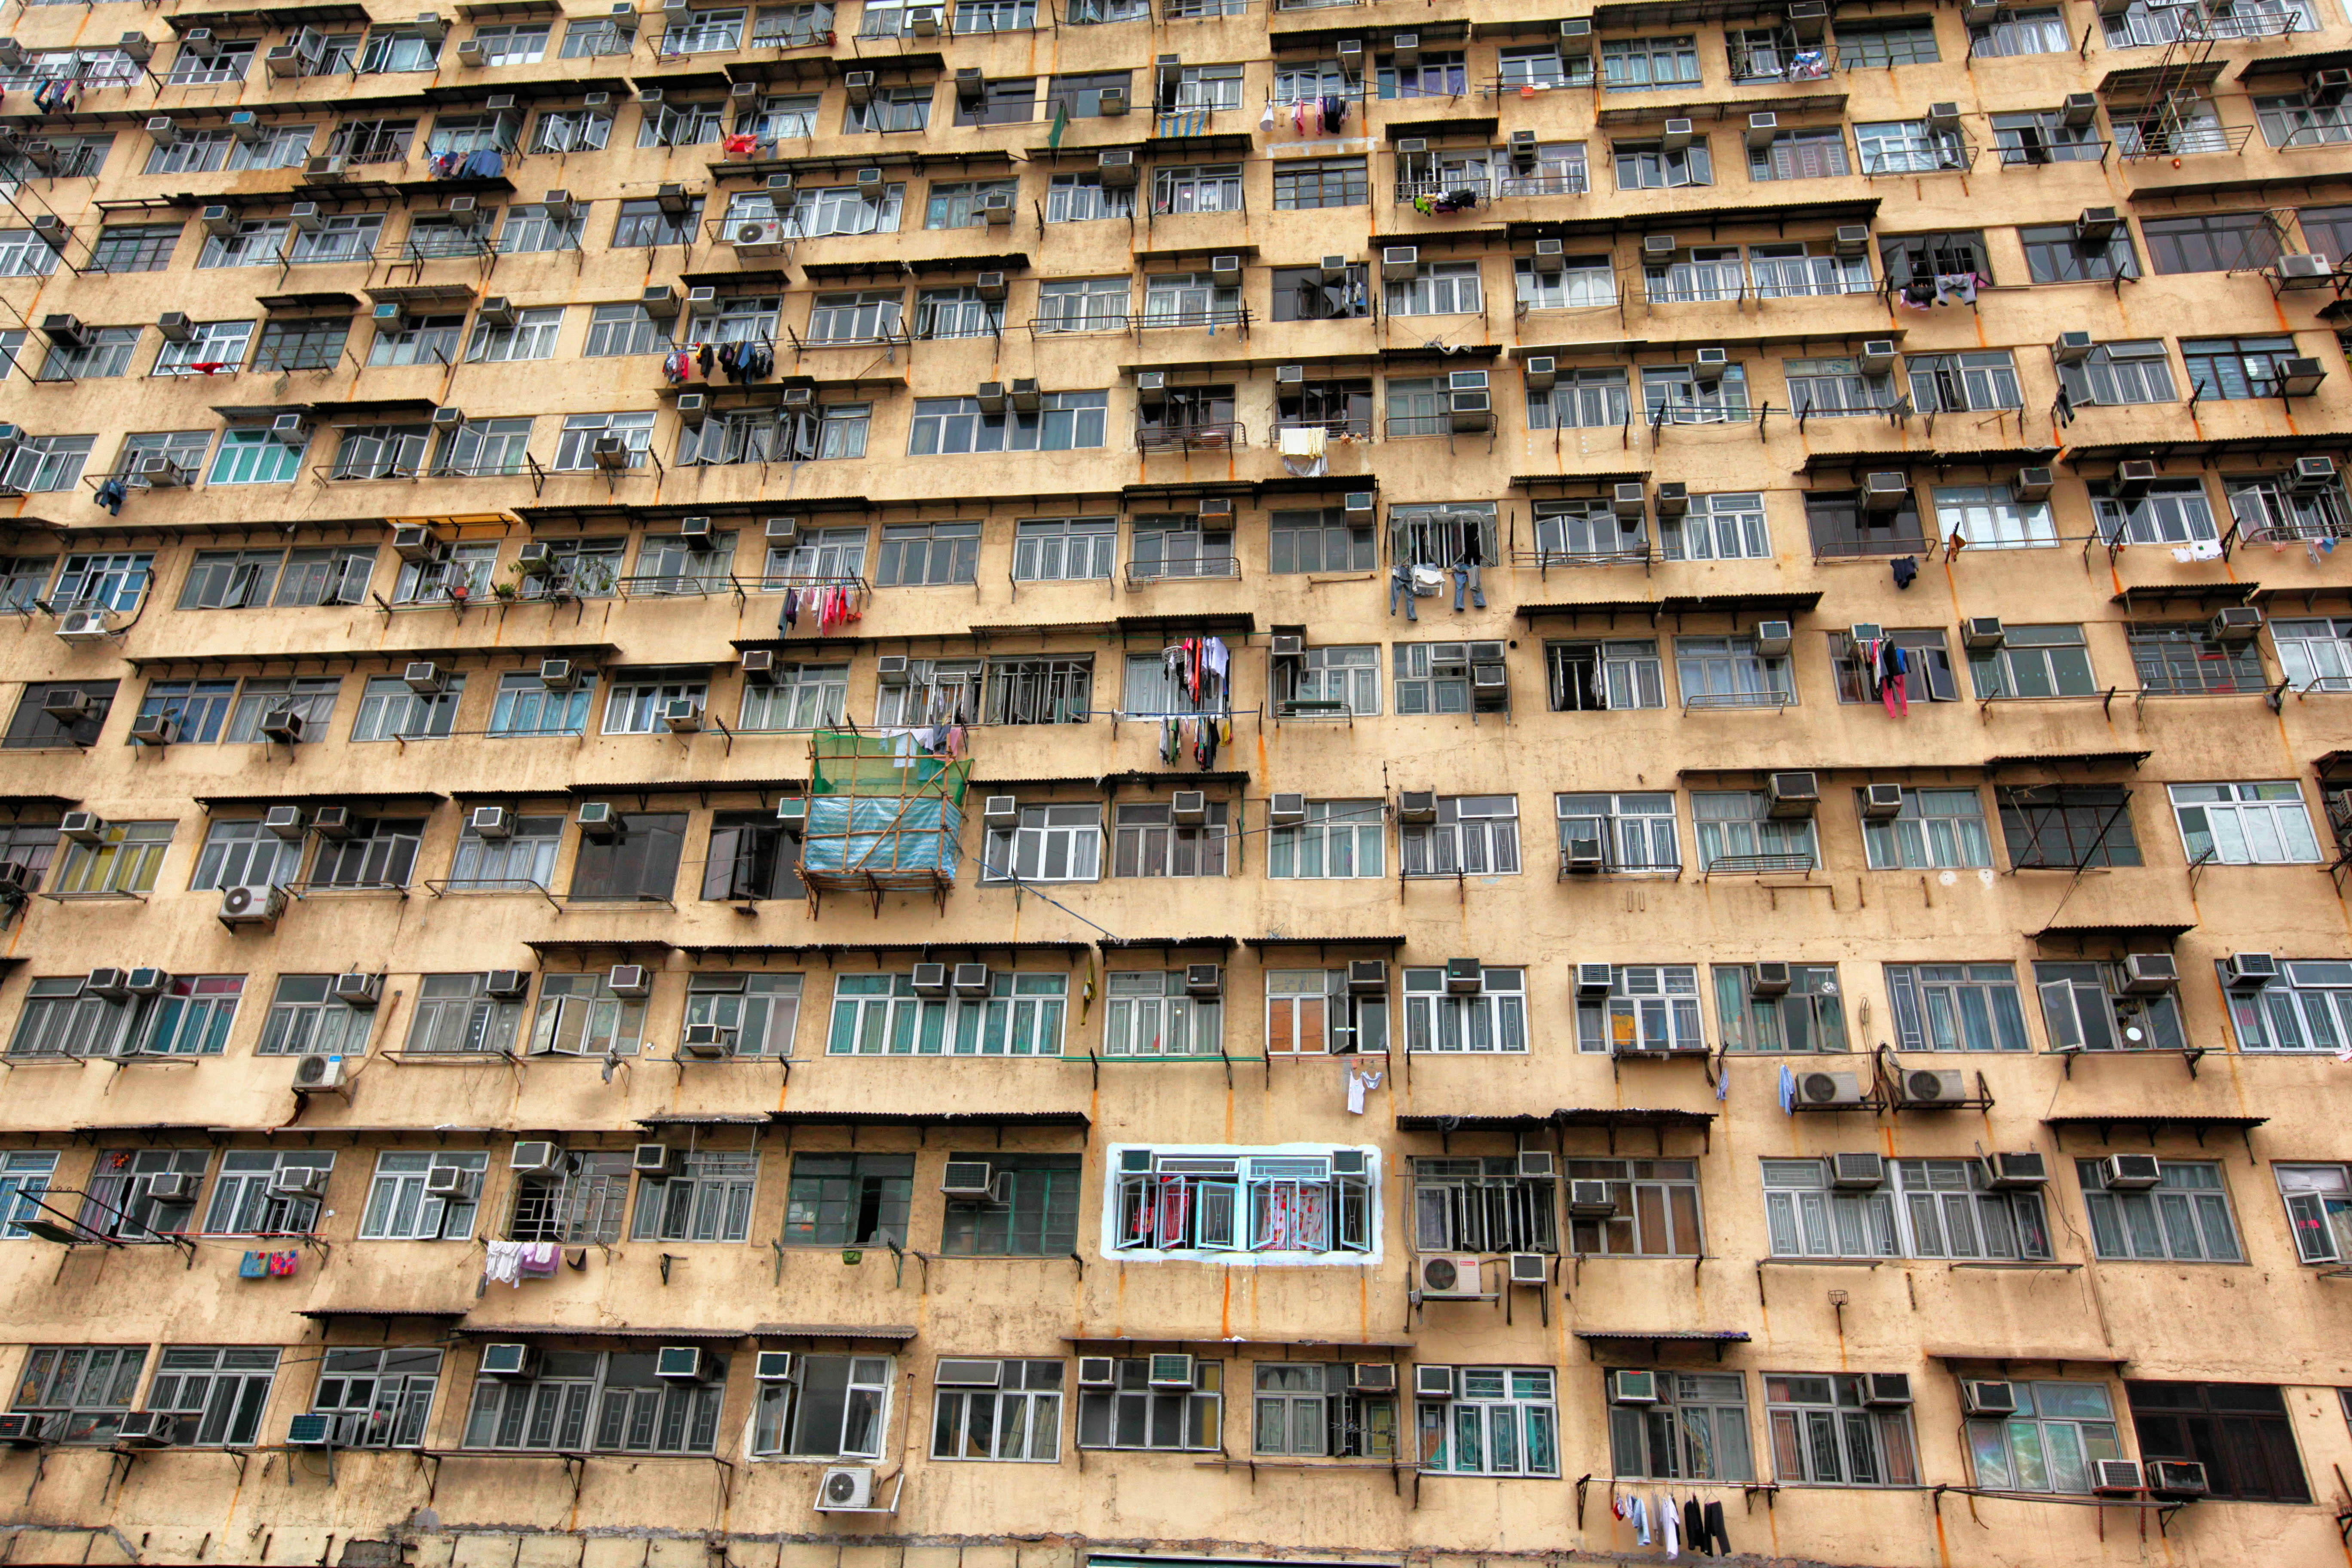 Blik op een overbevolkt appartementsgebouw